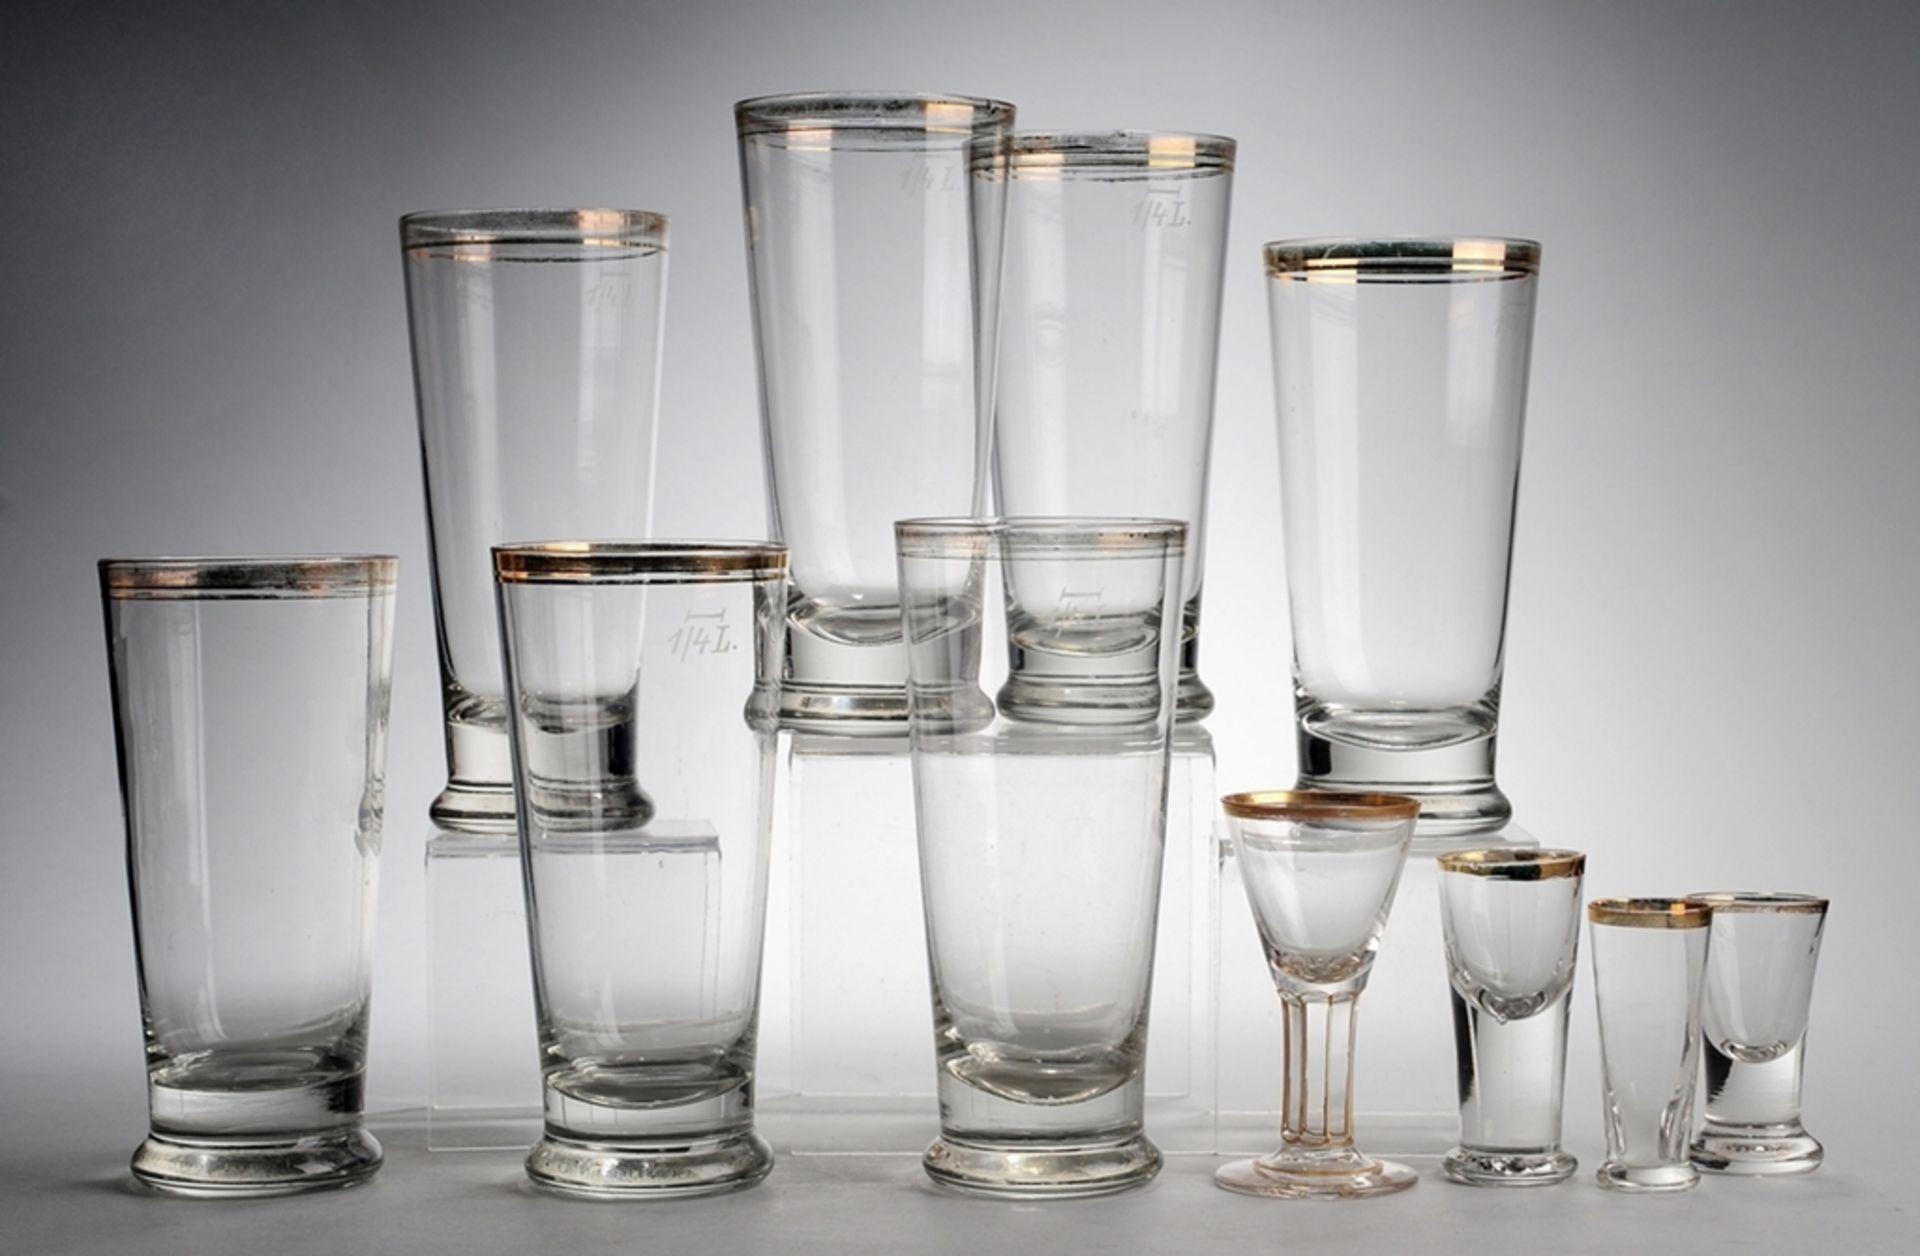 Konvolut historische Gläser11-tlg. 7 Bier- u. 4 Likörgläser. Farbloses Glas. Formgeblasen.